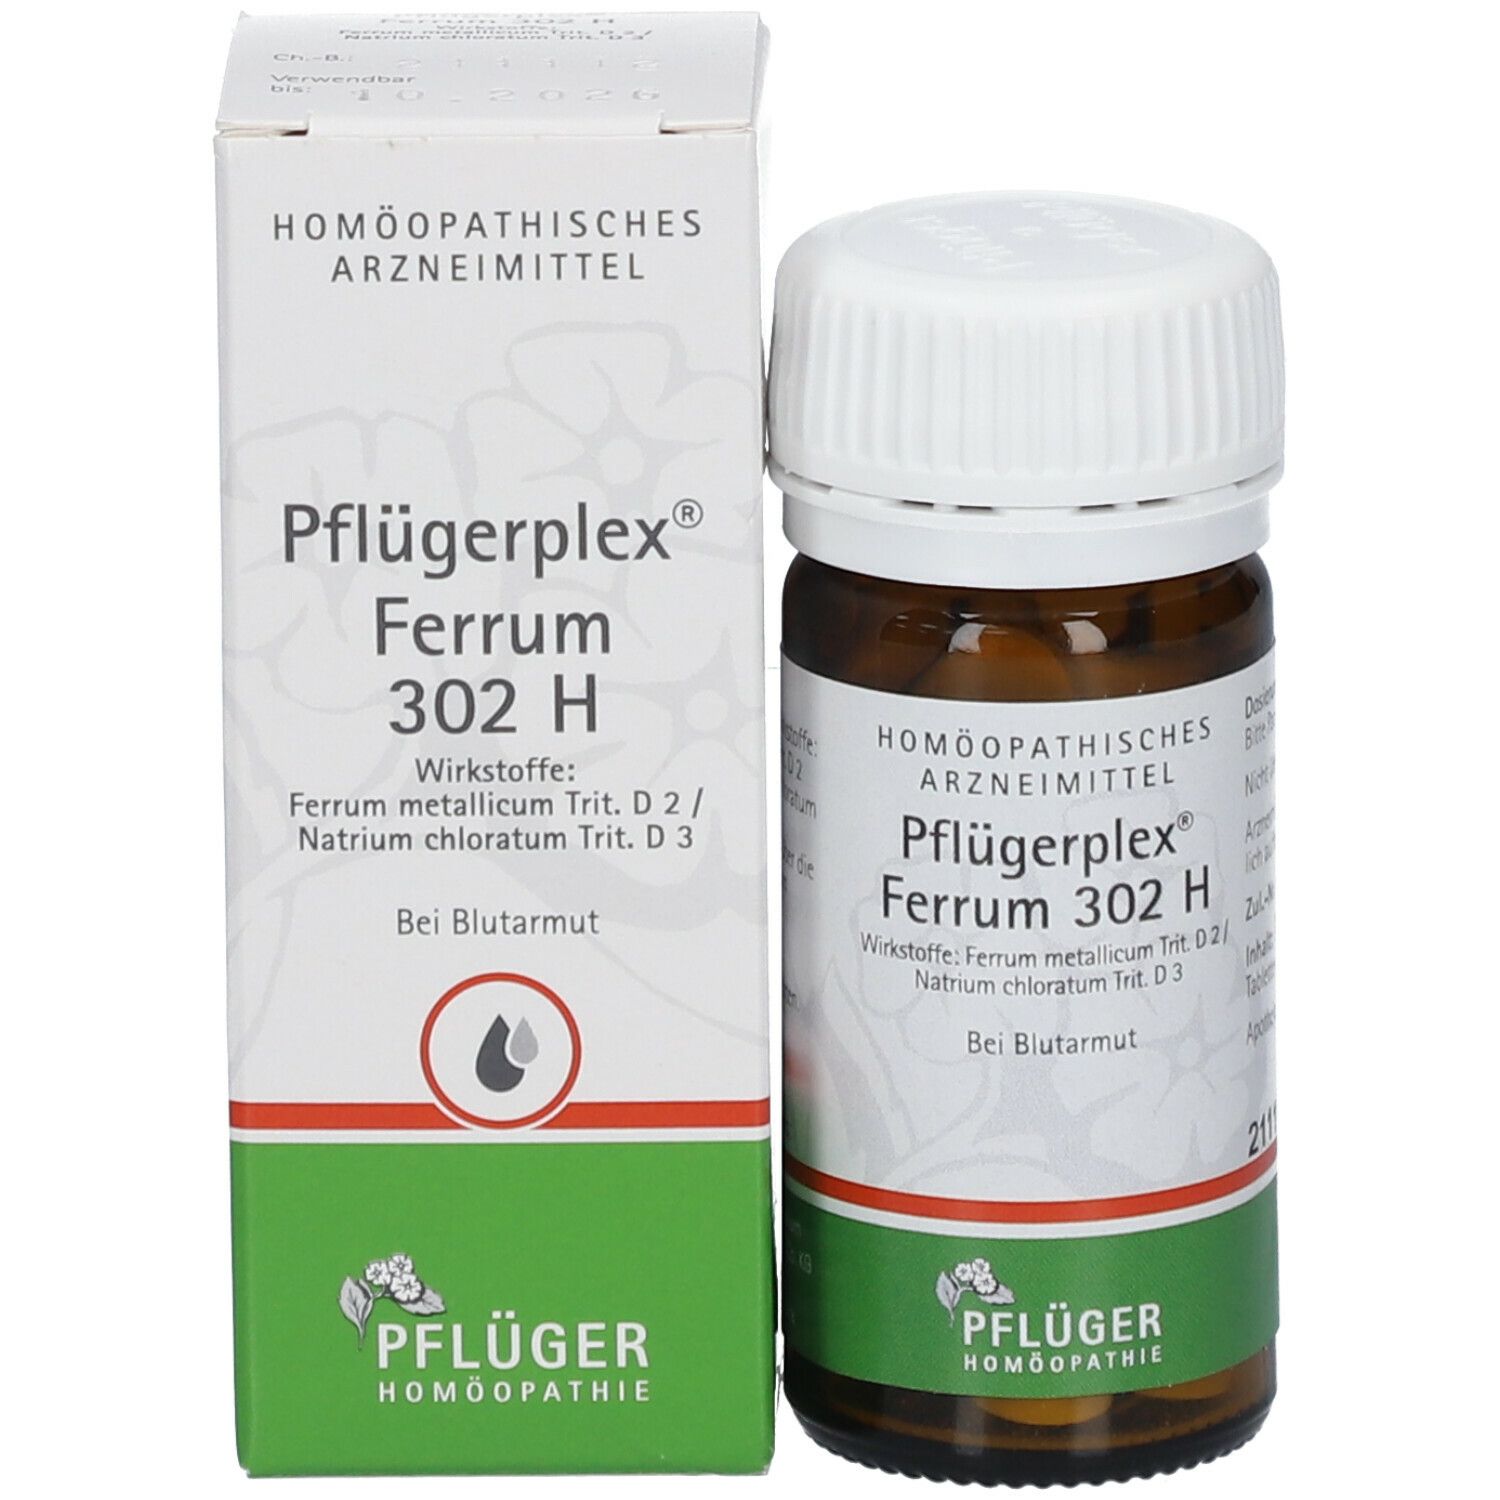 Pflügerplex® Ferrum 302 H